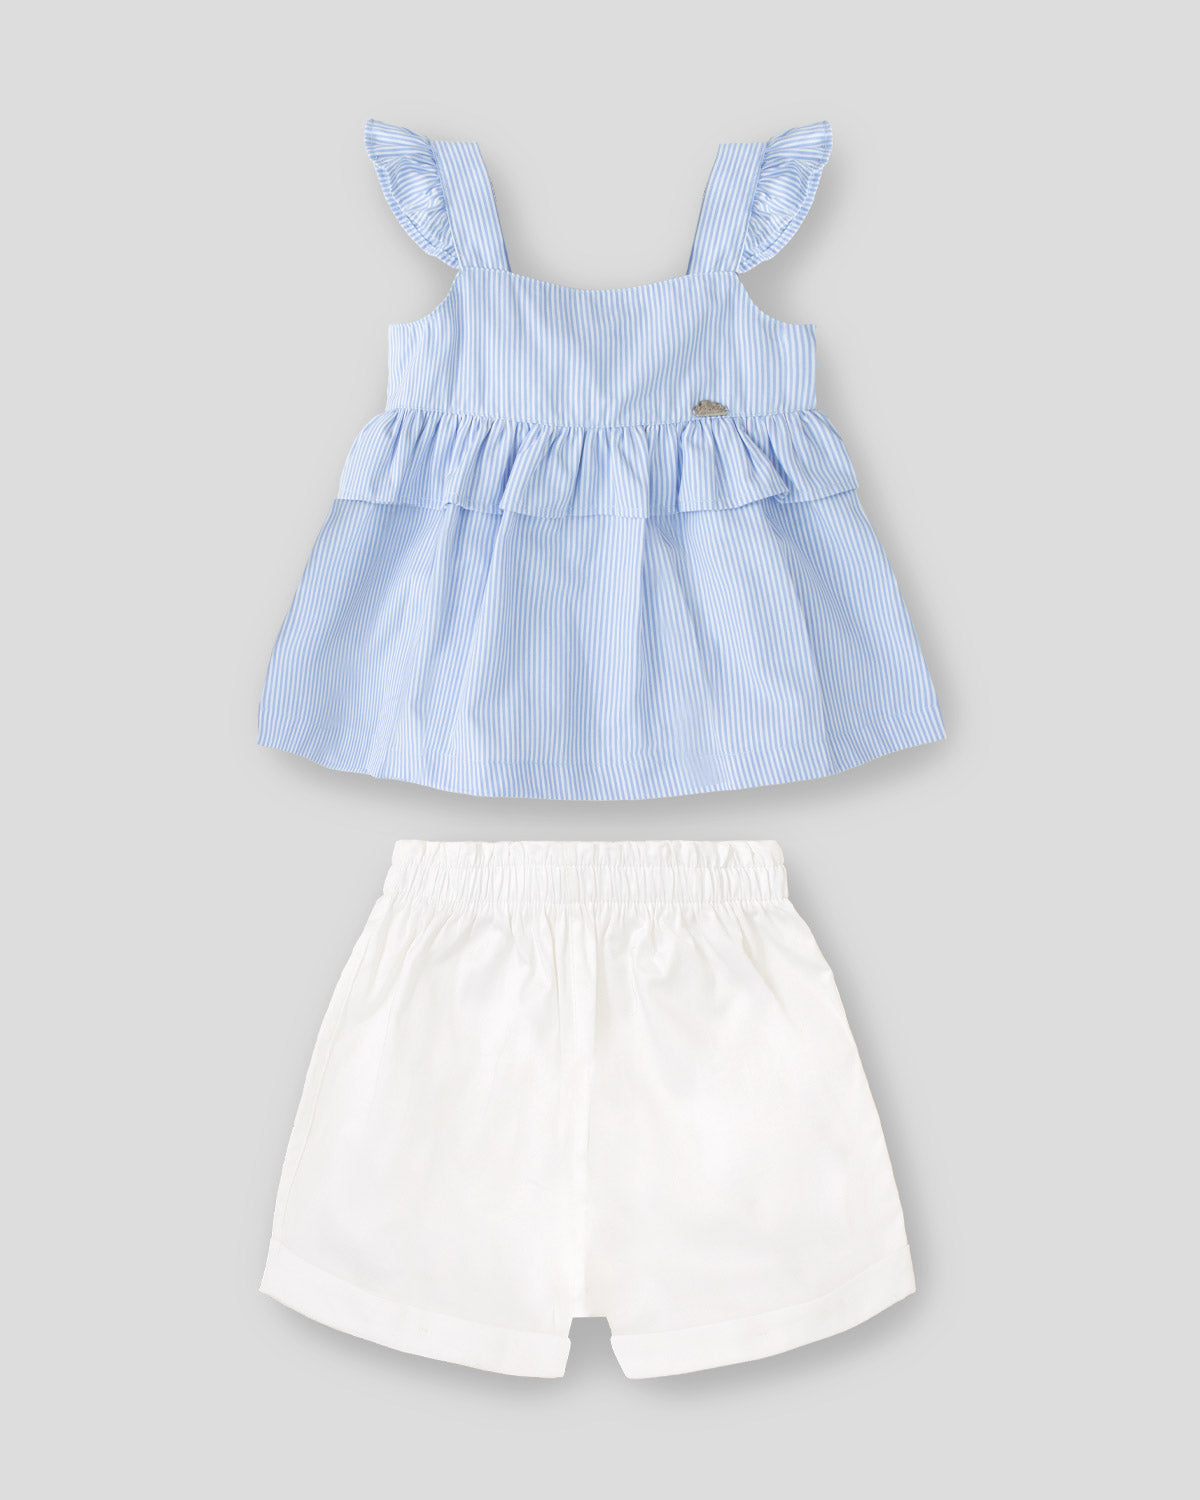 Conjunto blusa azul de líneas con moño en espalda y short blanco para niña